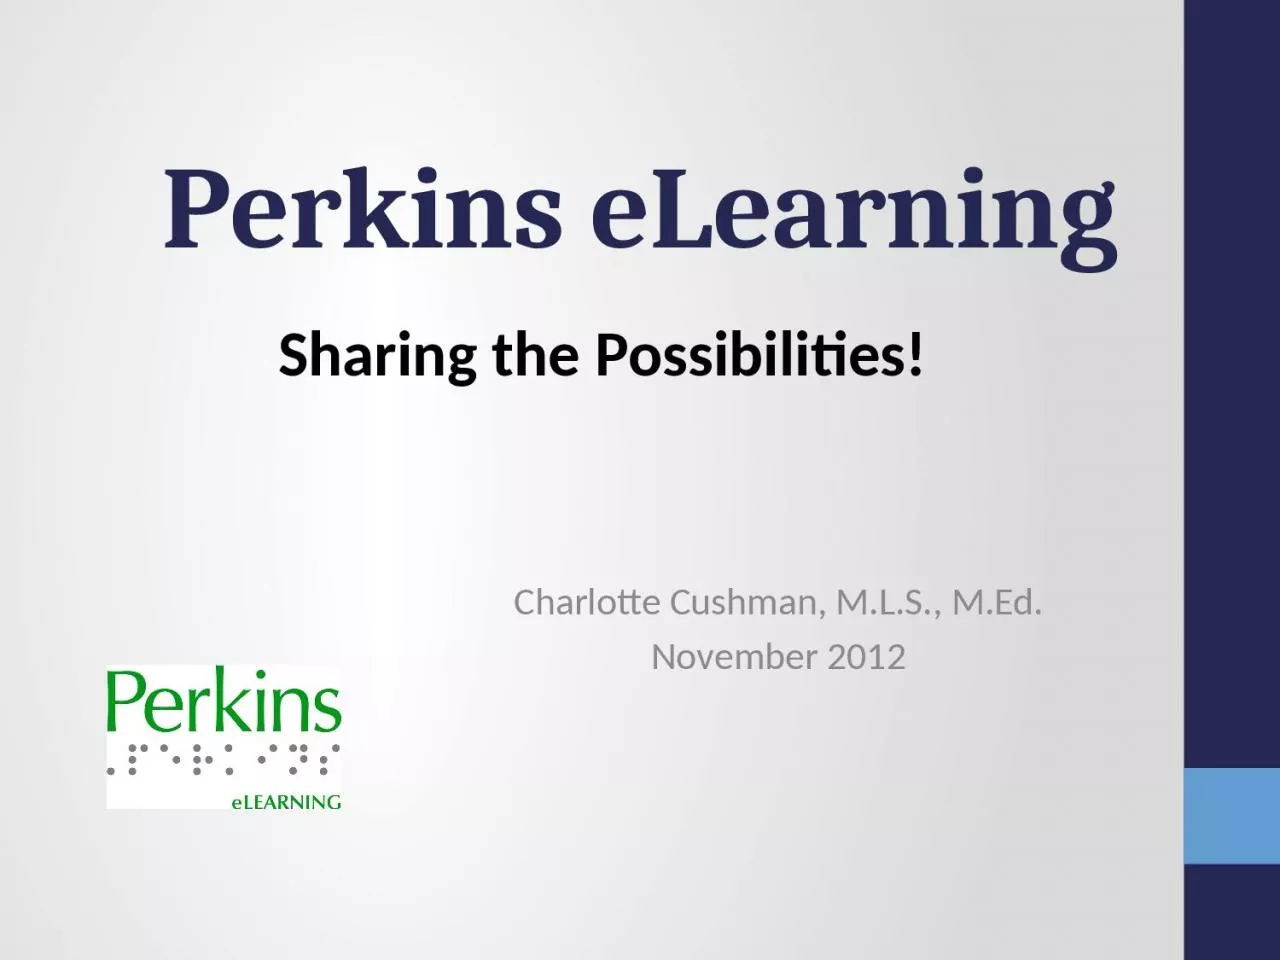 Perkins eLearning Charlotte Cushman, M.L.S., M.Ed.